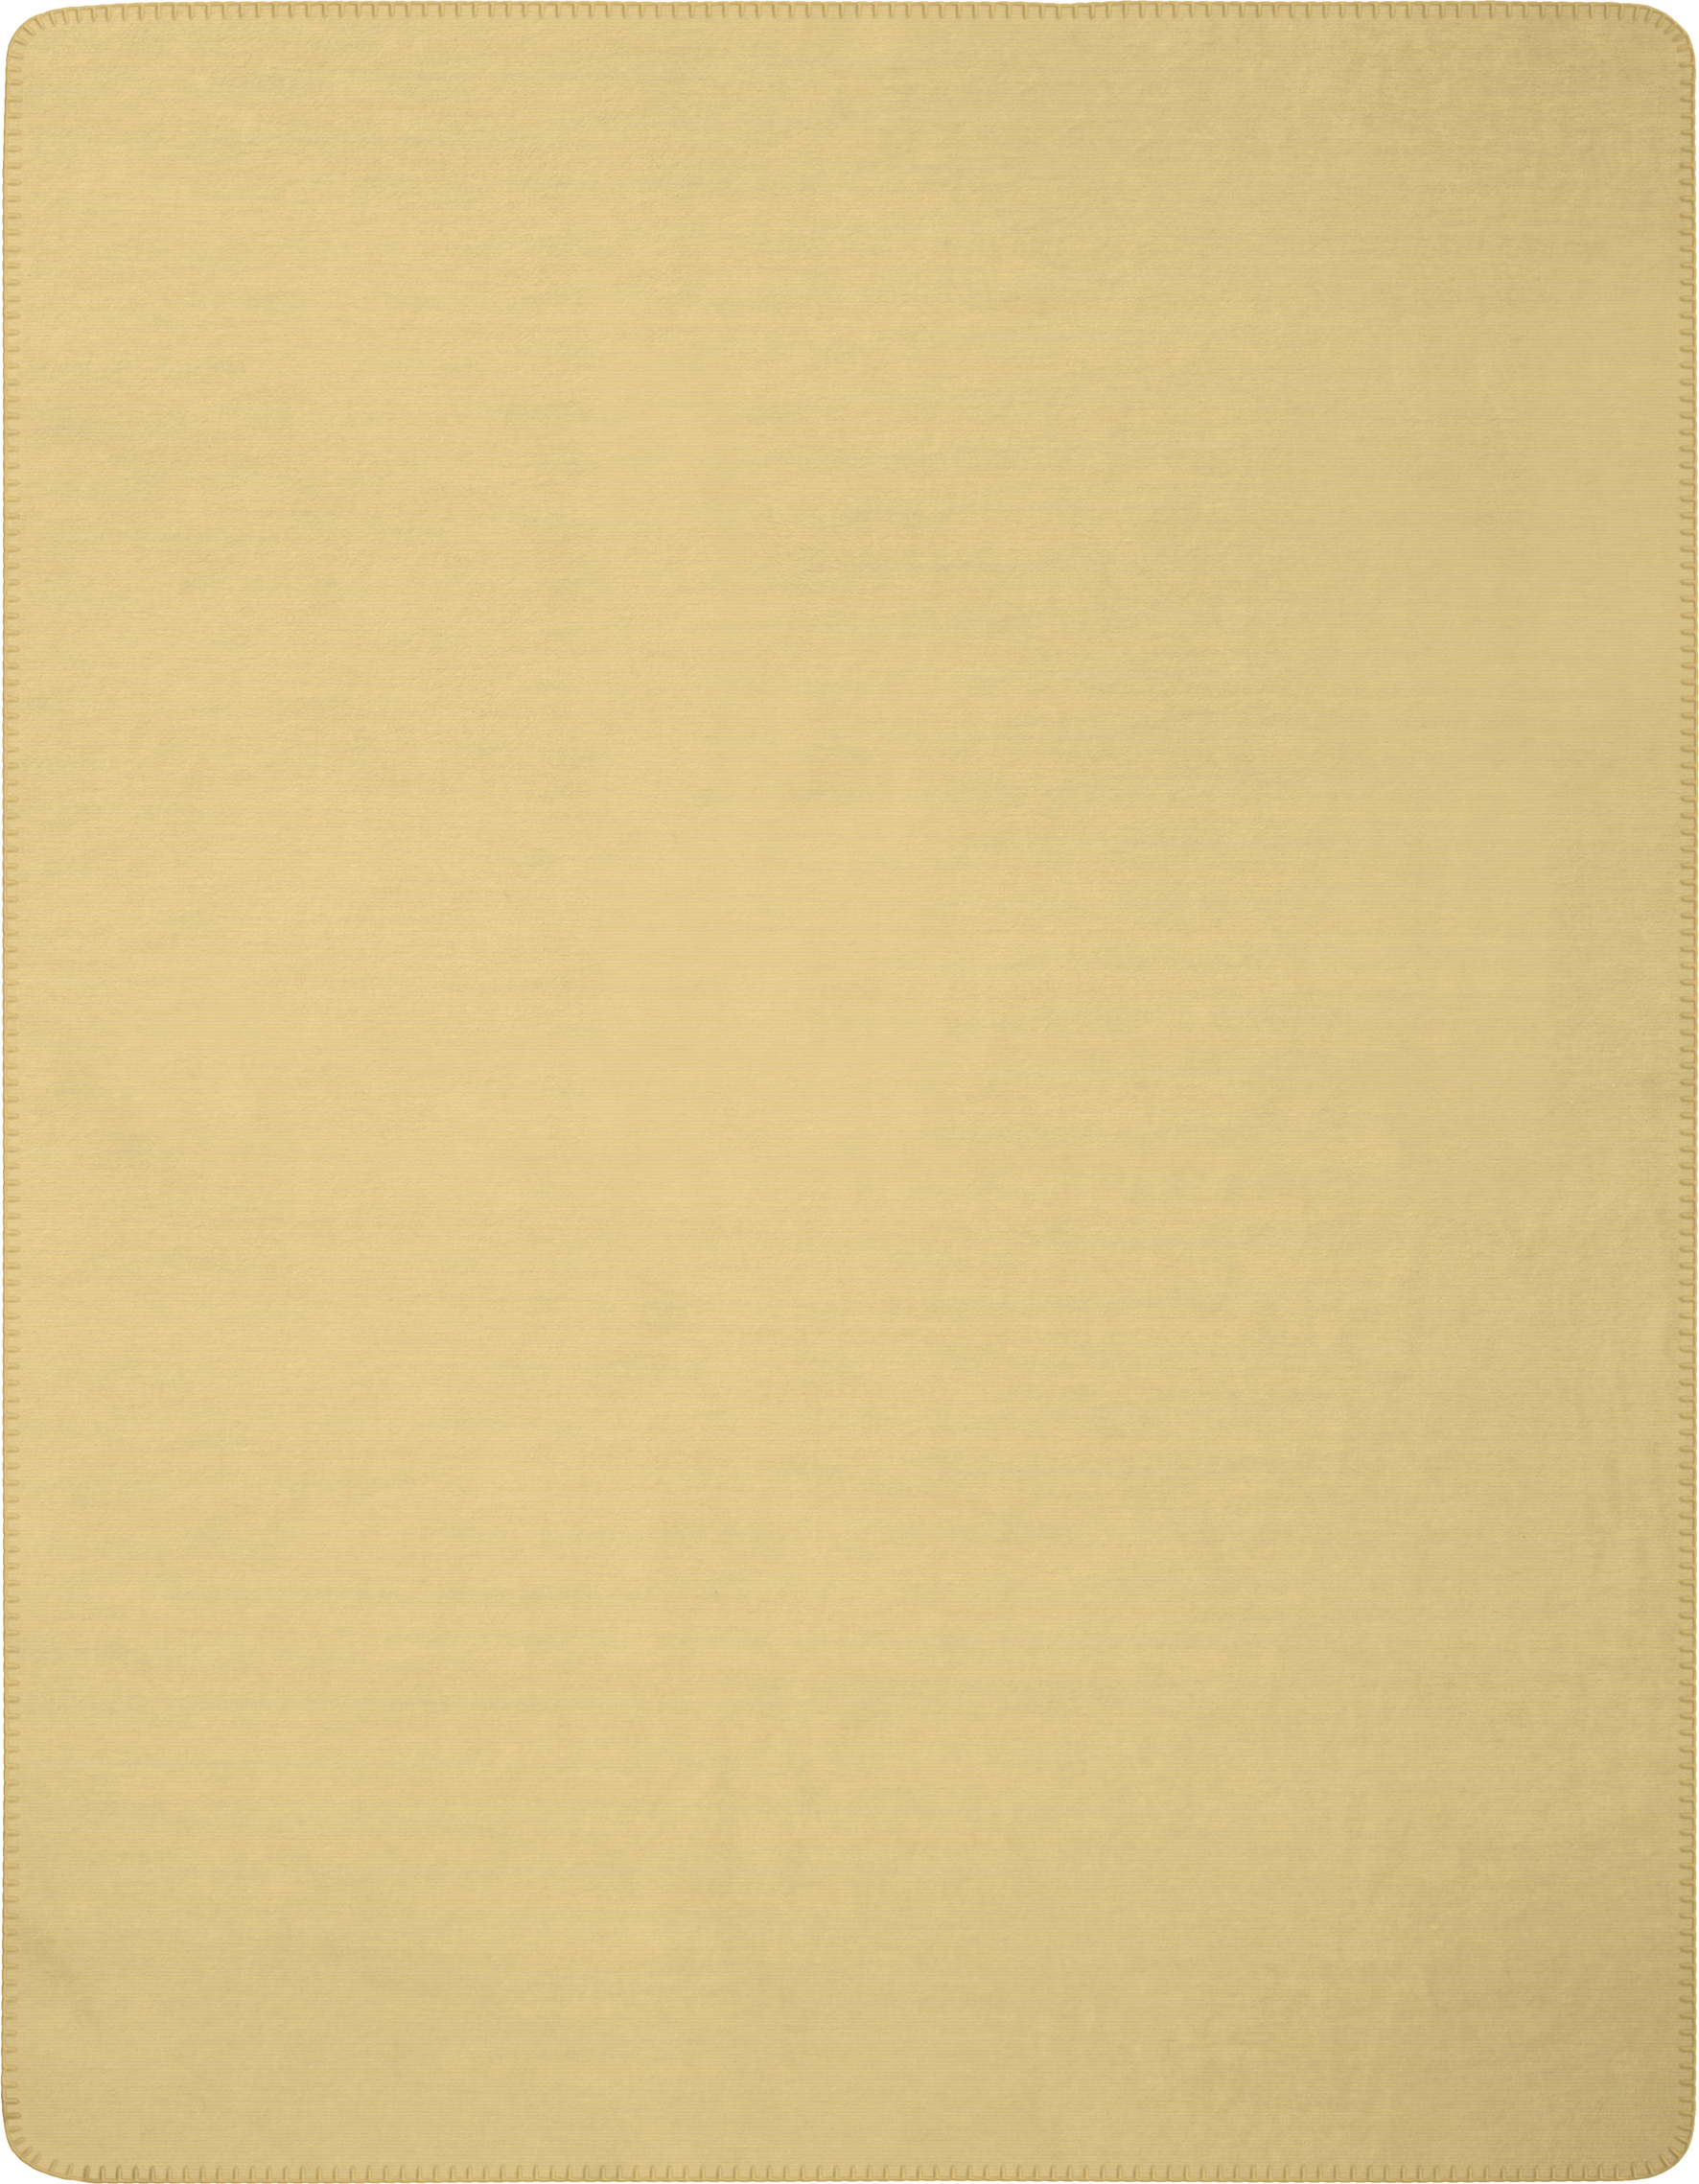 Wohndecke "Melange Doubleface" aus Baumwollmischgewebe in 150x200 cm in Honig-Creme - Vorderseite